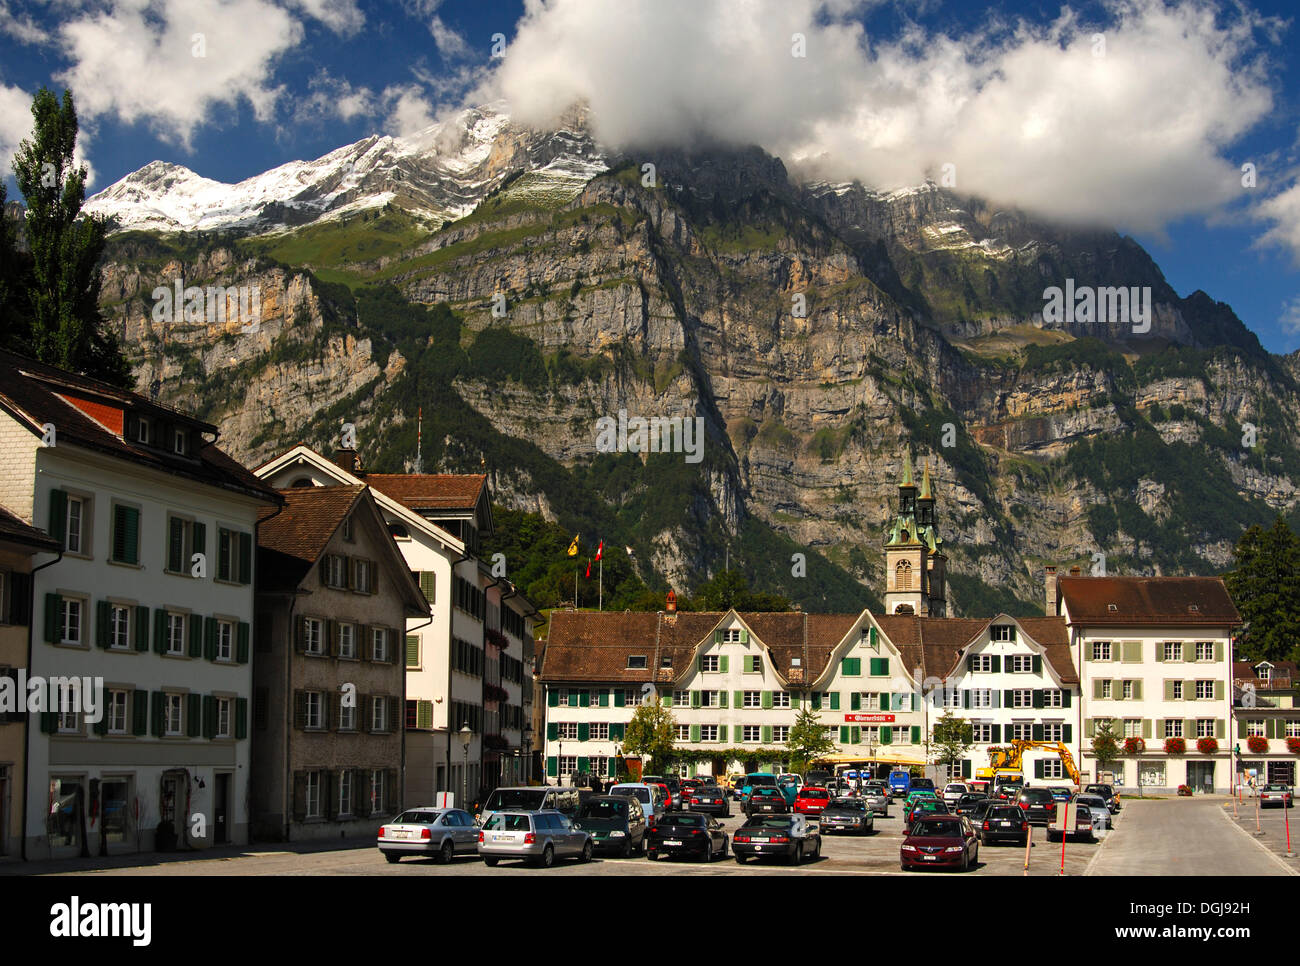 Landsgemeindeplatz, town square, in front of the Glarus Alps, Switzerland, Europe Stock Photo